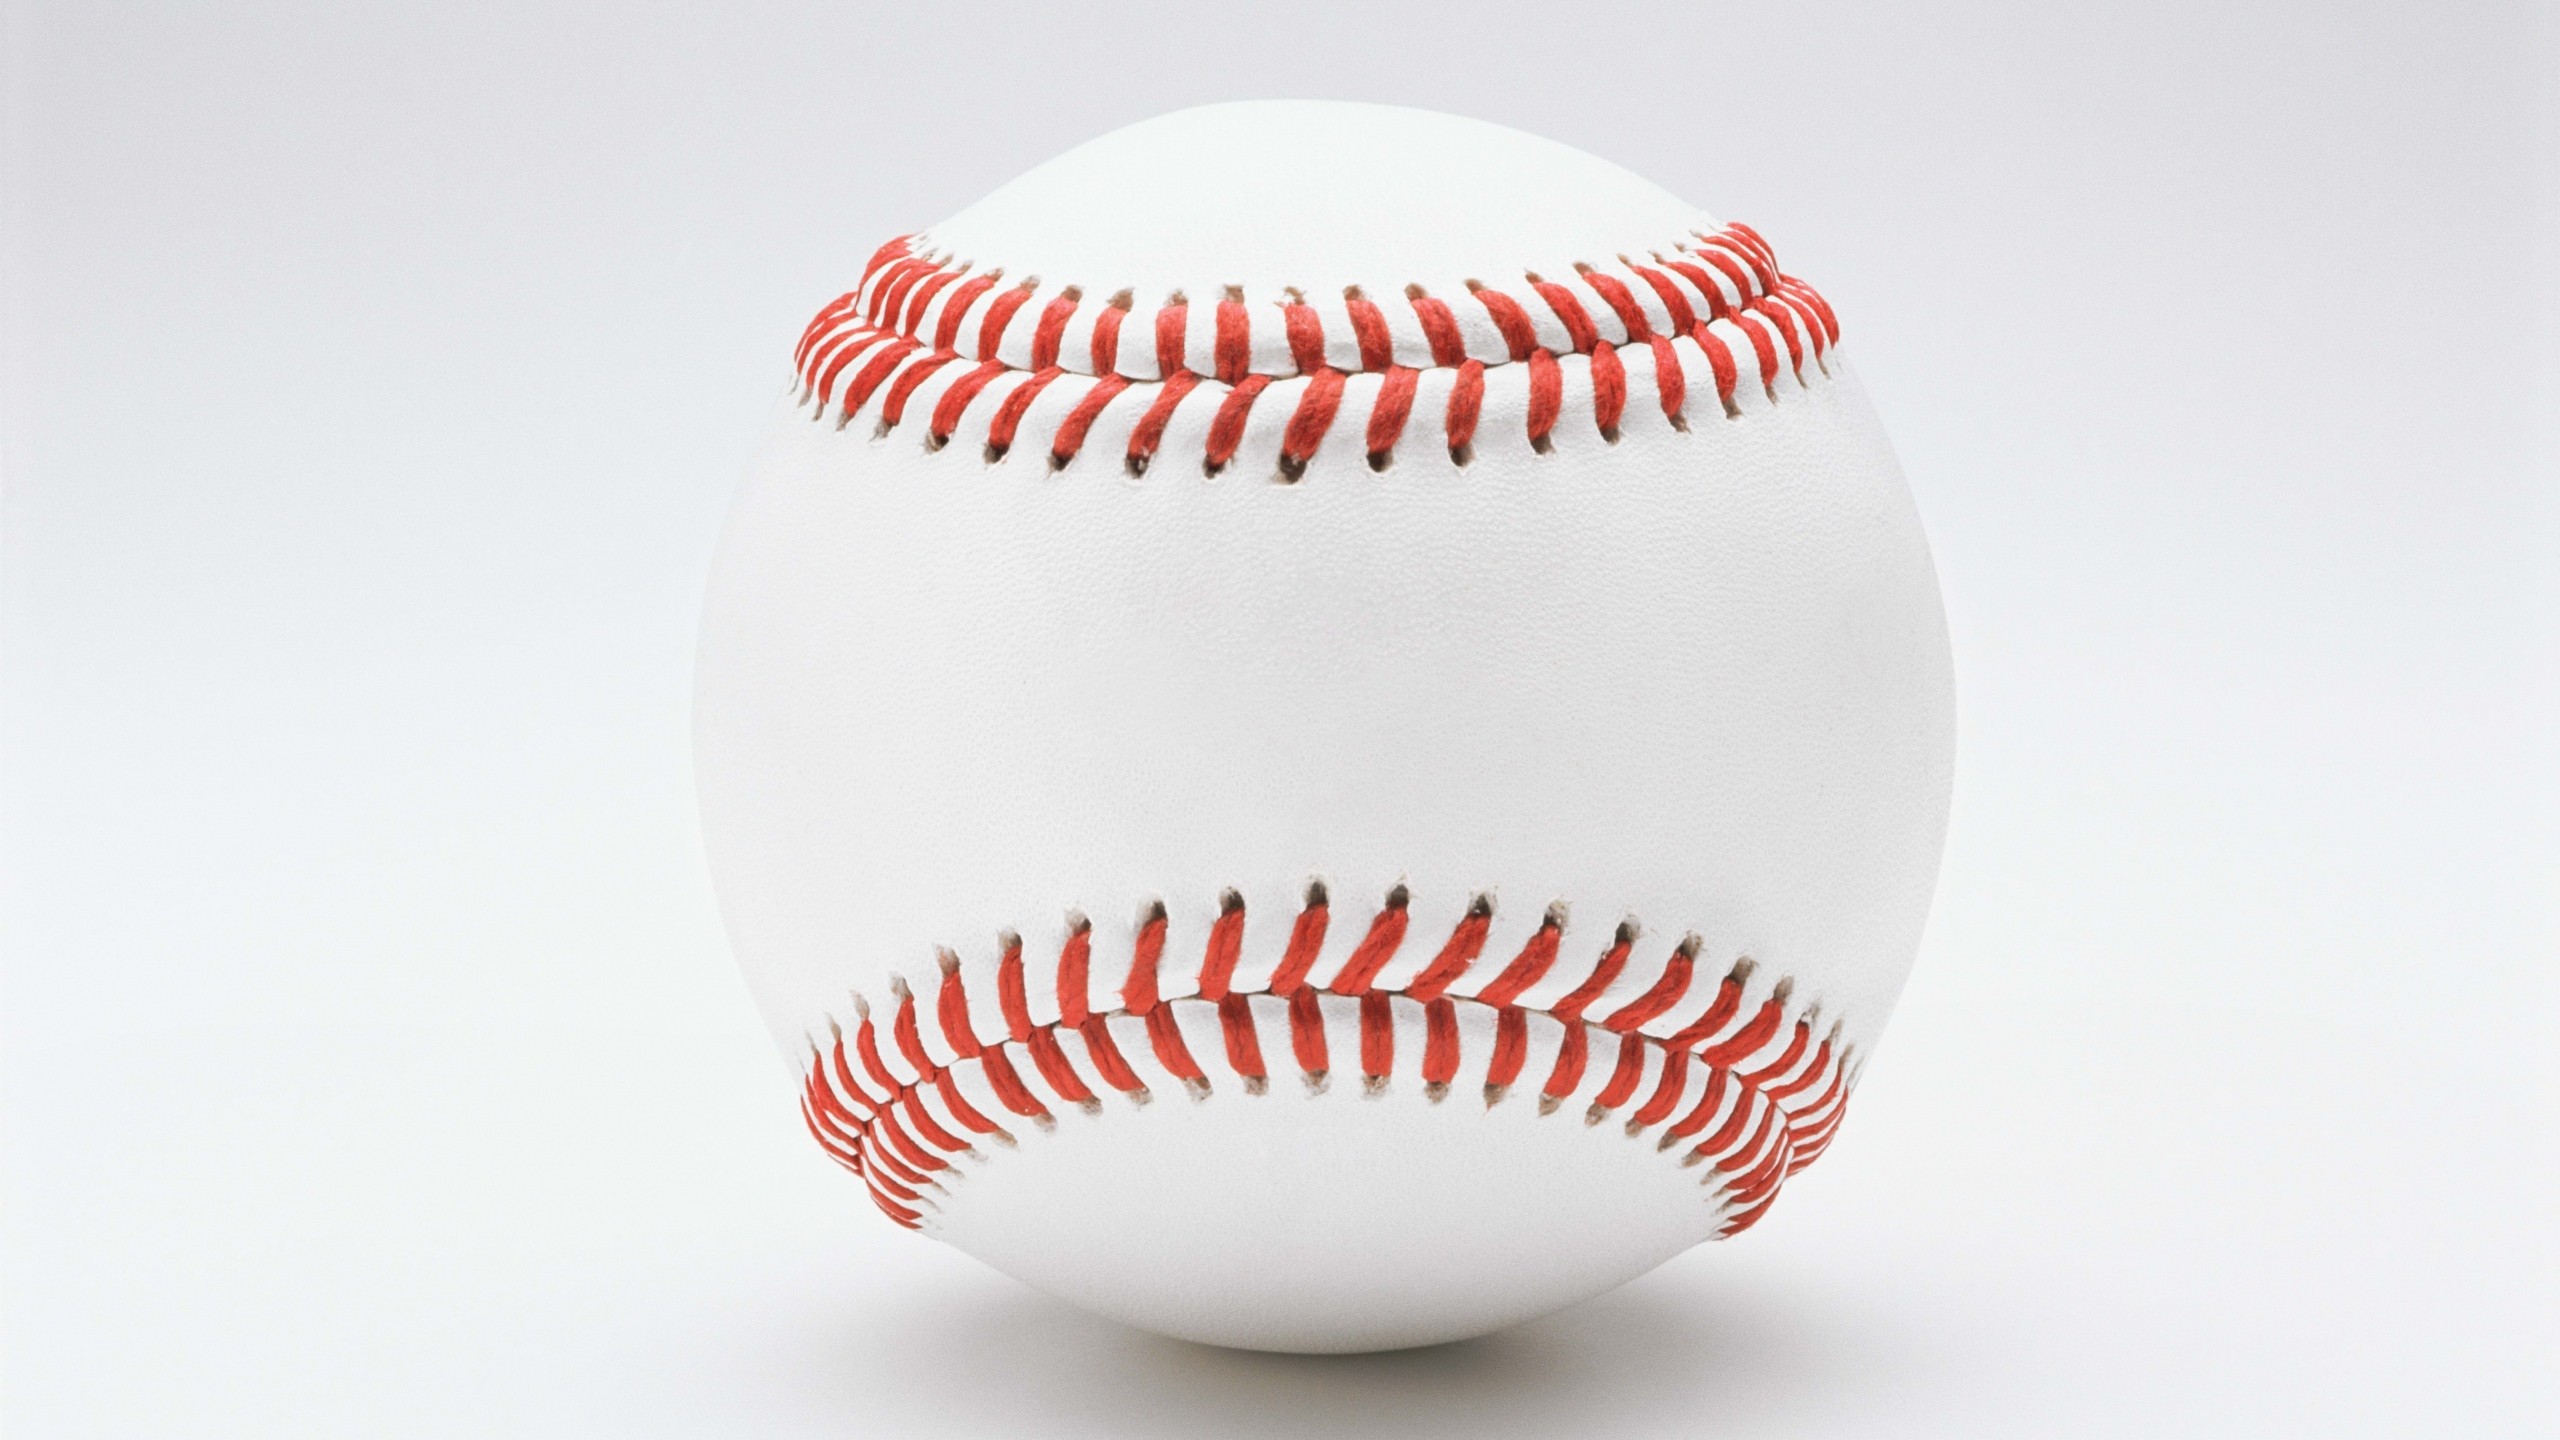 2560x1440  Wallpaper ball, white background, baseball